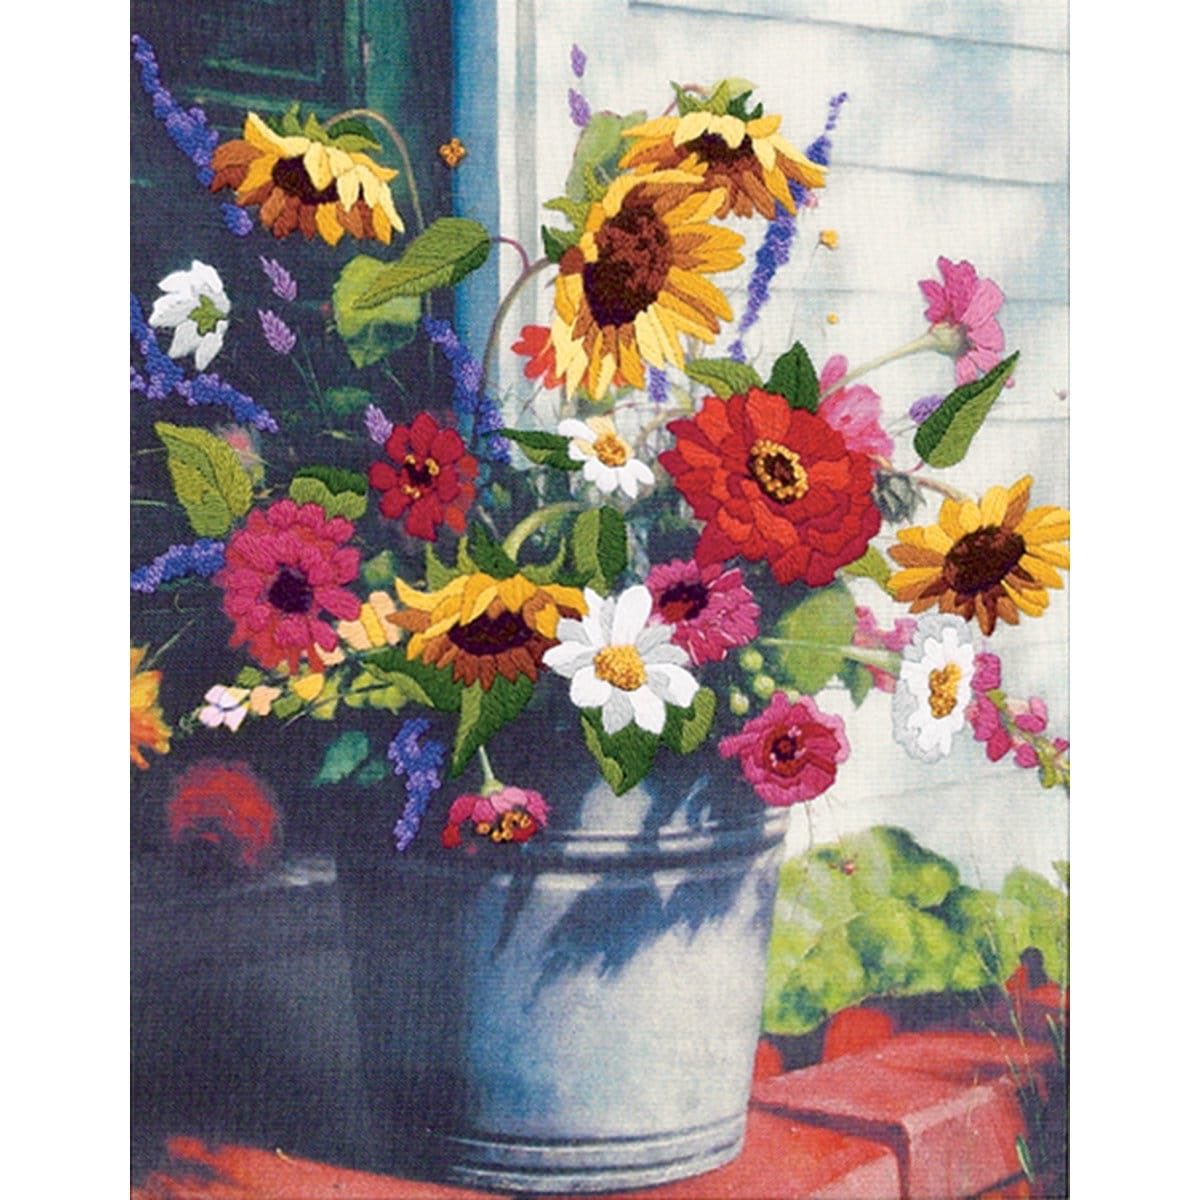 #beautiful #crafts #DIY #etsy #etsyfavorites #etsyfinds #etsygifts #EtsyHandmade #etsylove #EtsySeller #etsyshop #EtsyStarSeller #etsystore #etsyvintage #Flowers #redflowers #pinkflowers #Zinnas #Daisy #yellowflowers #Sunflowers 
addictedtoshabby.etsy.com/listing/124254…